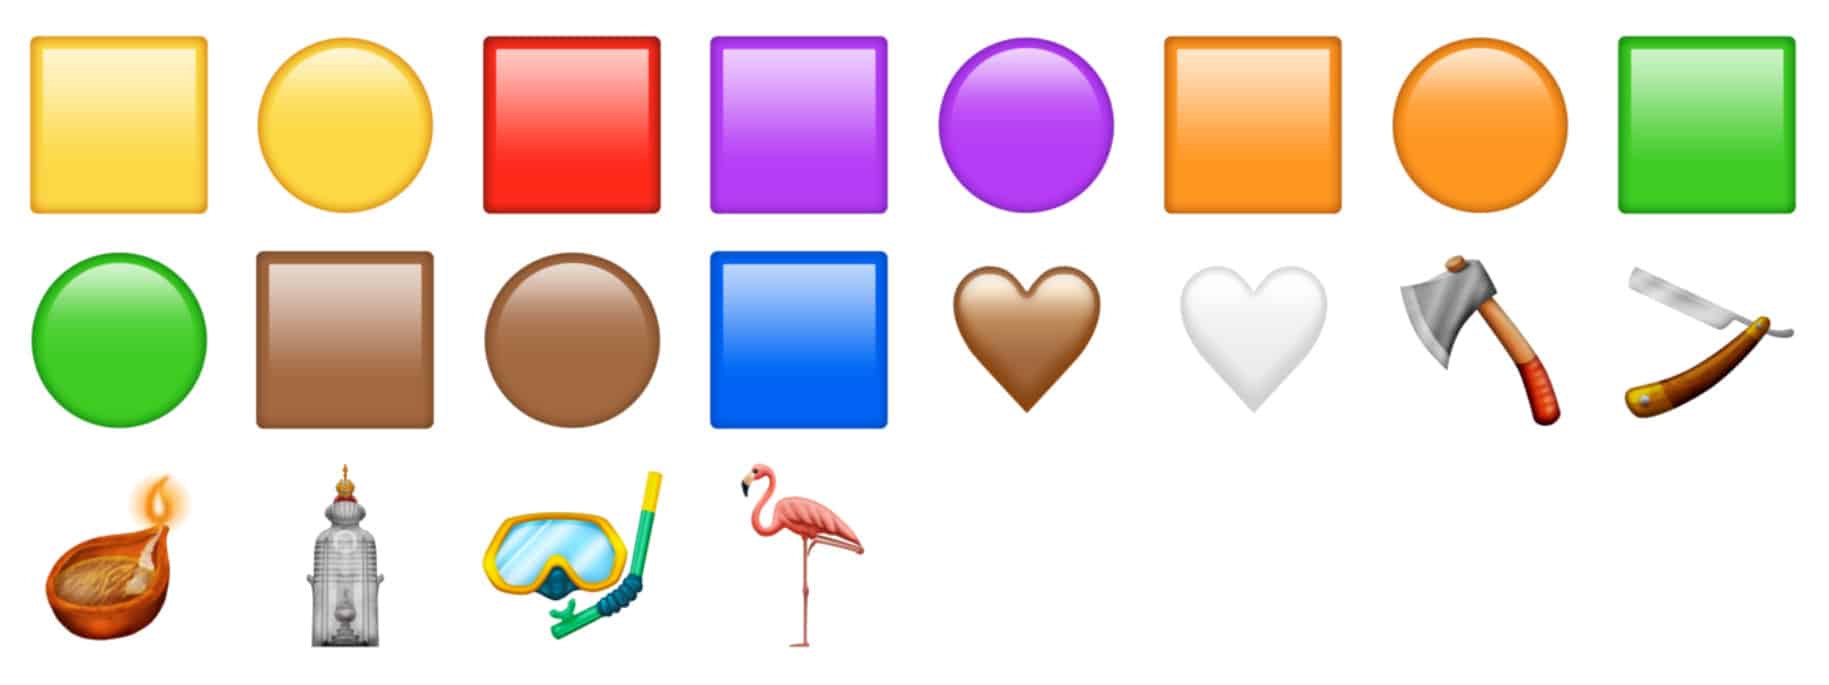 emoji for 2019